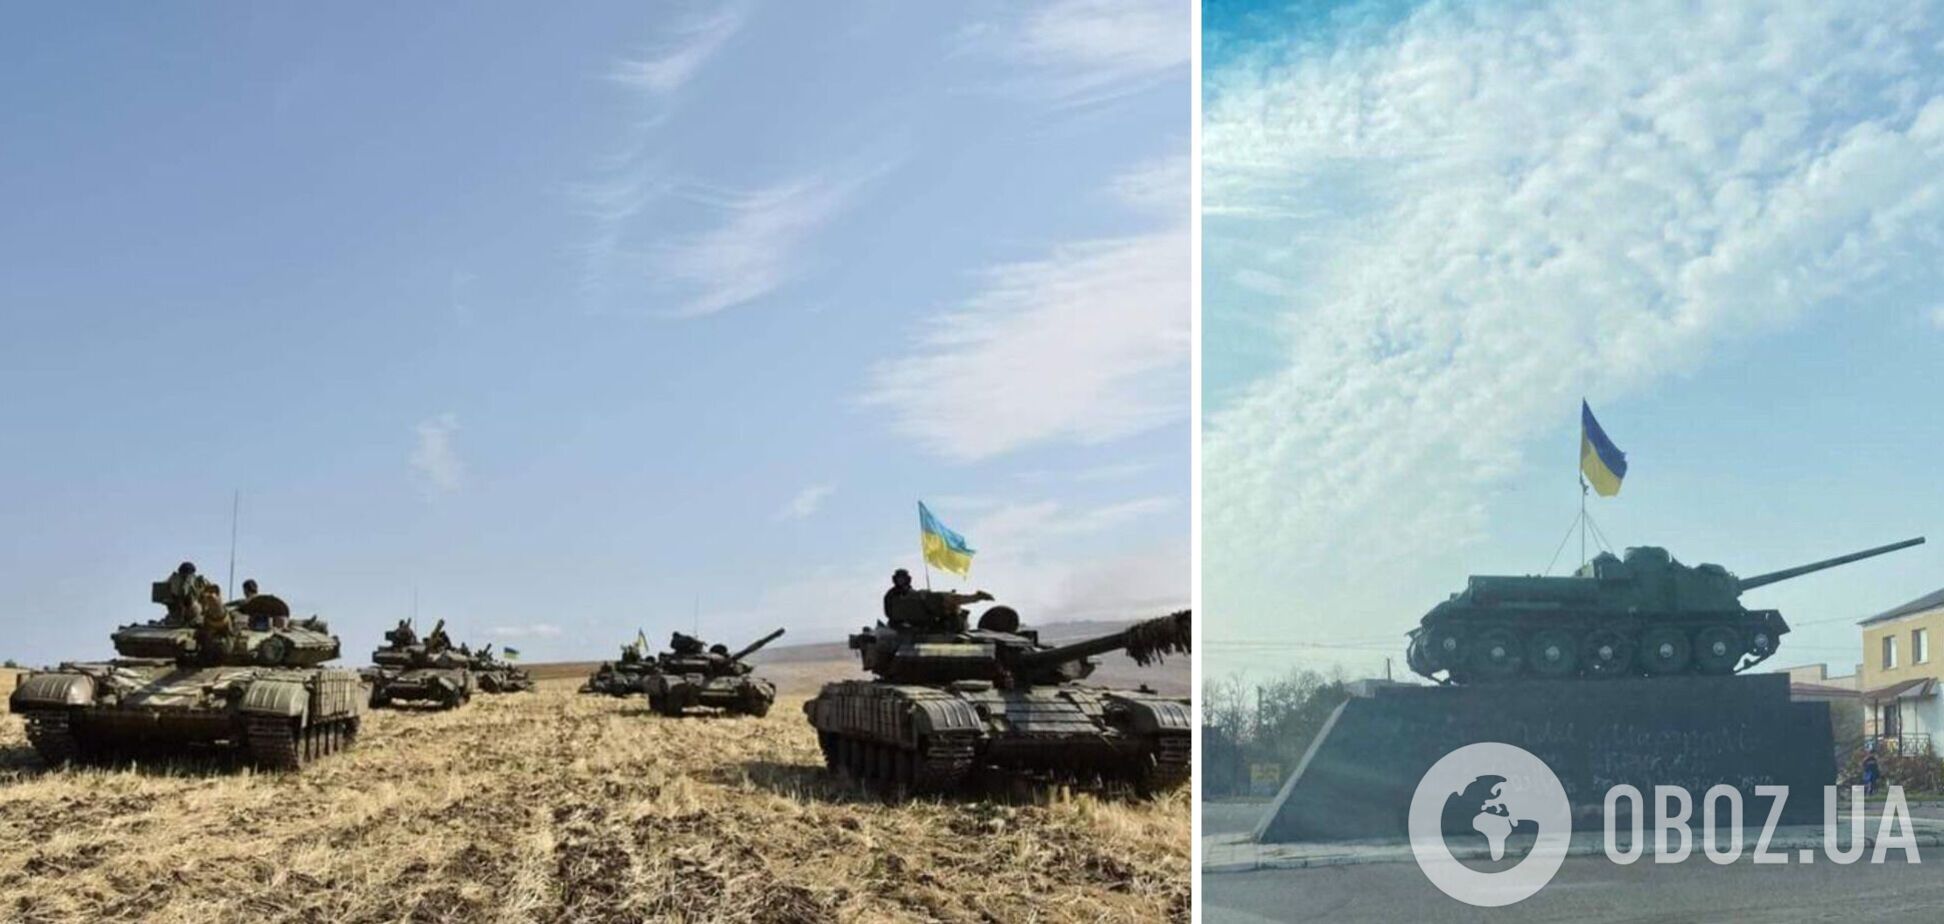 В Белозерке Херсонской области подняли флаг Украины. Фото и видео